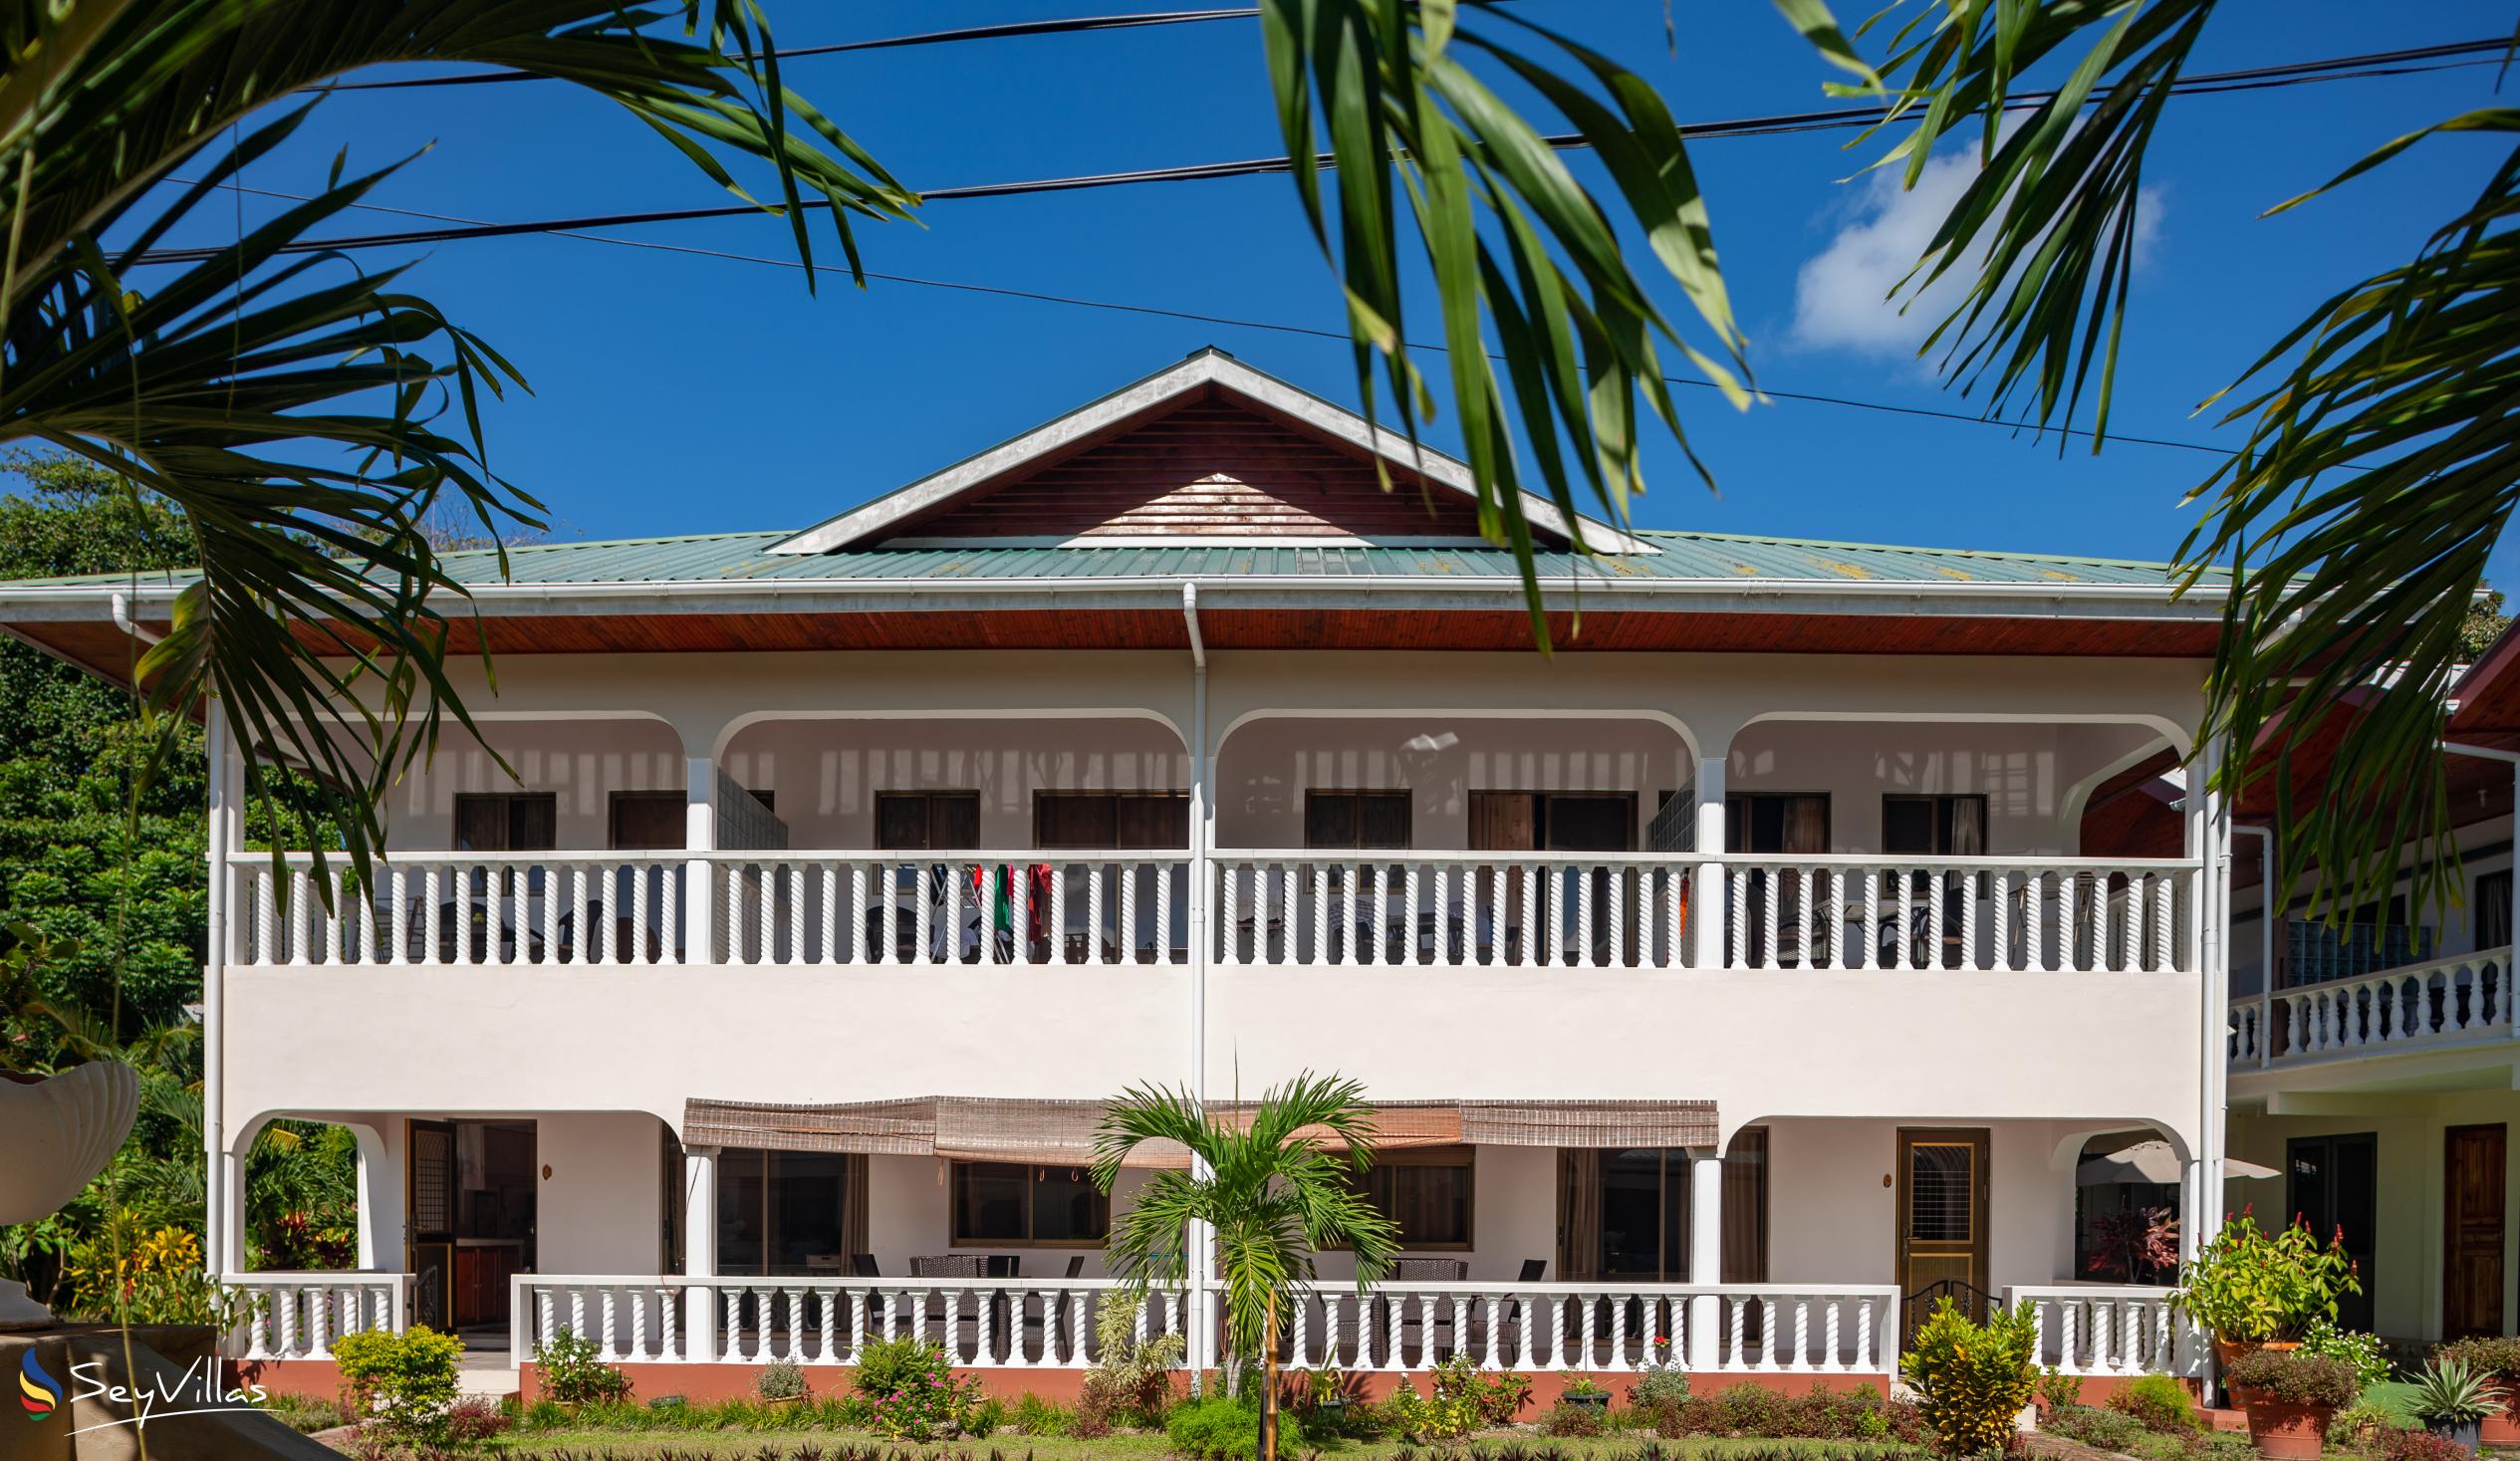 Foto 4: Tourterelle Holiday Home - Aussenbereich - Praslin (Seychellen)